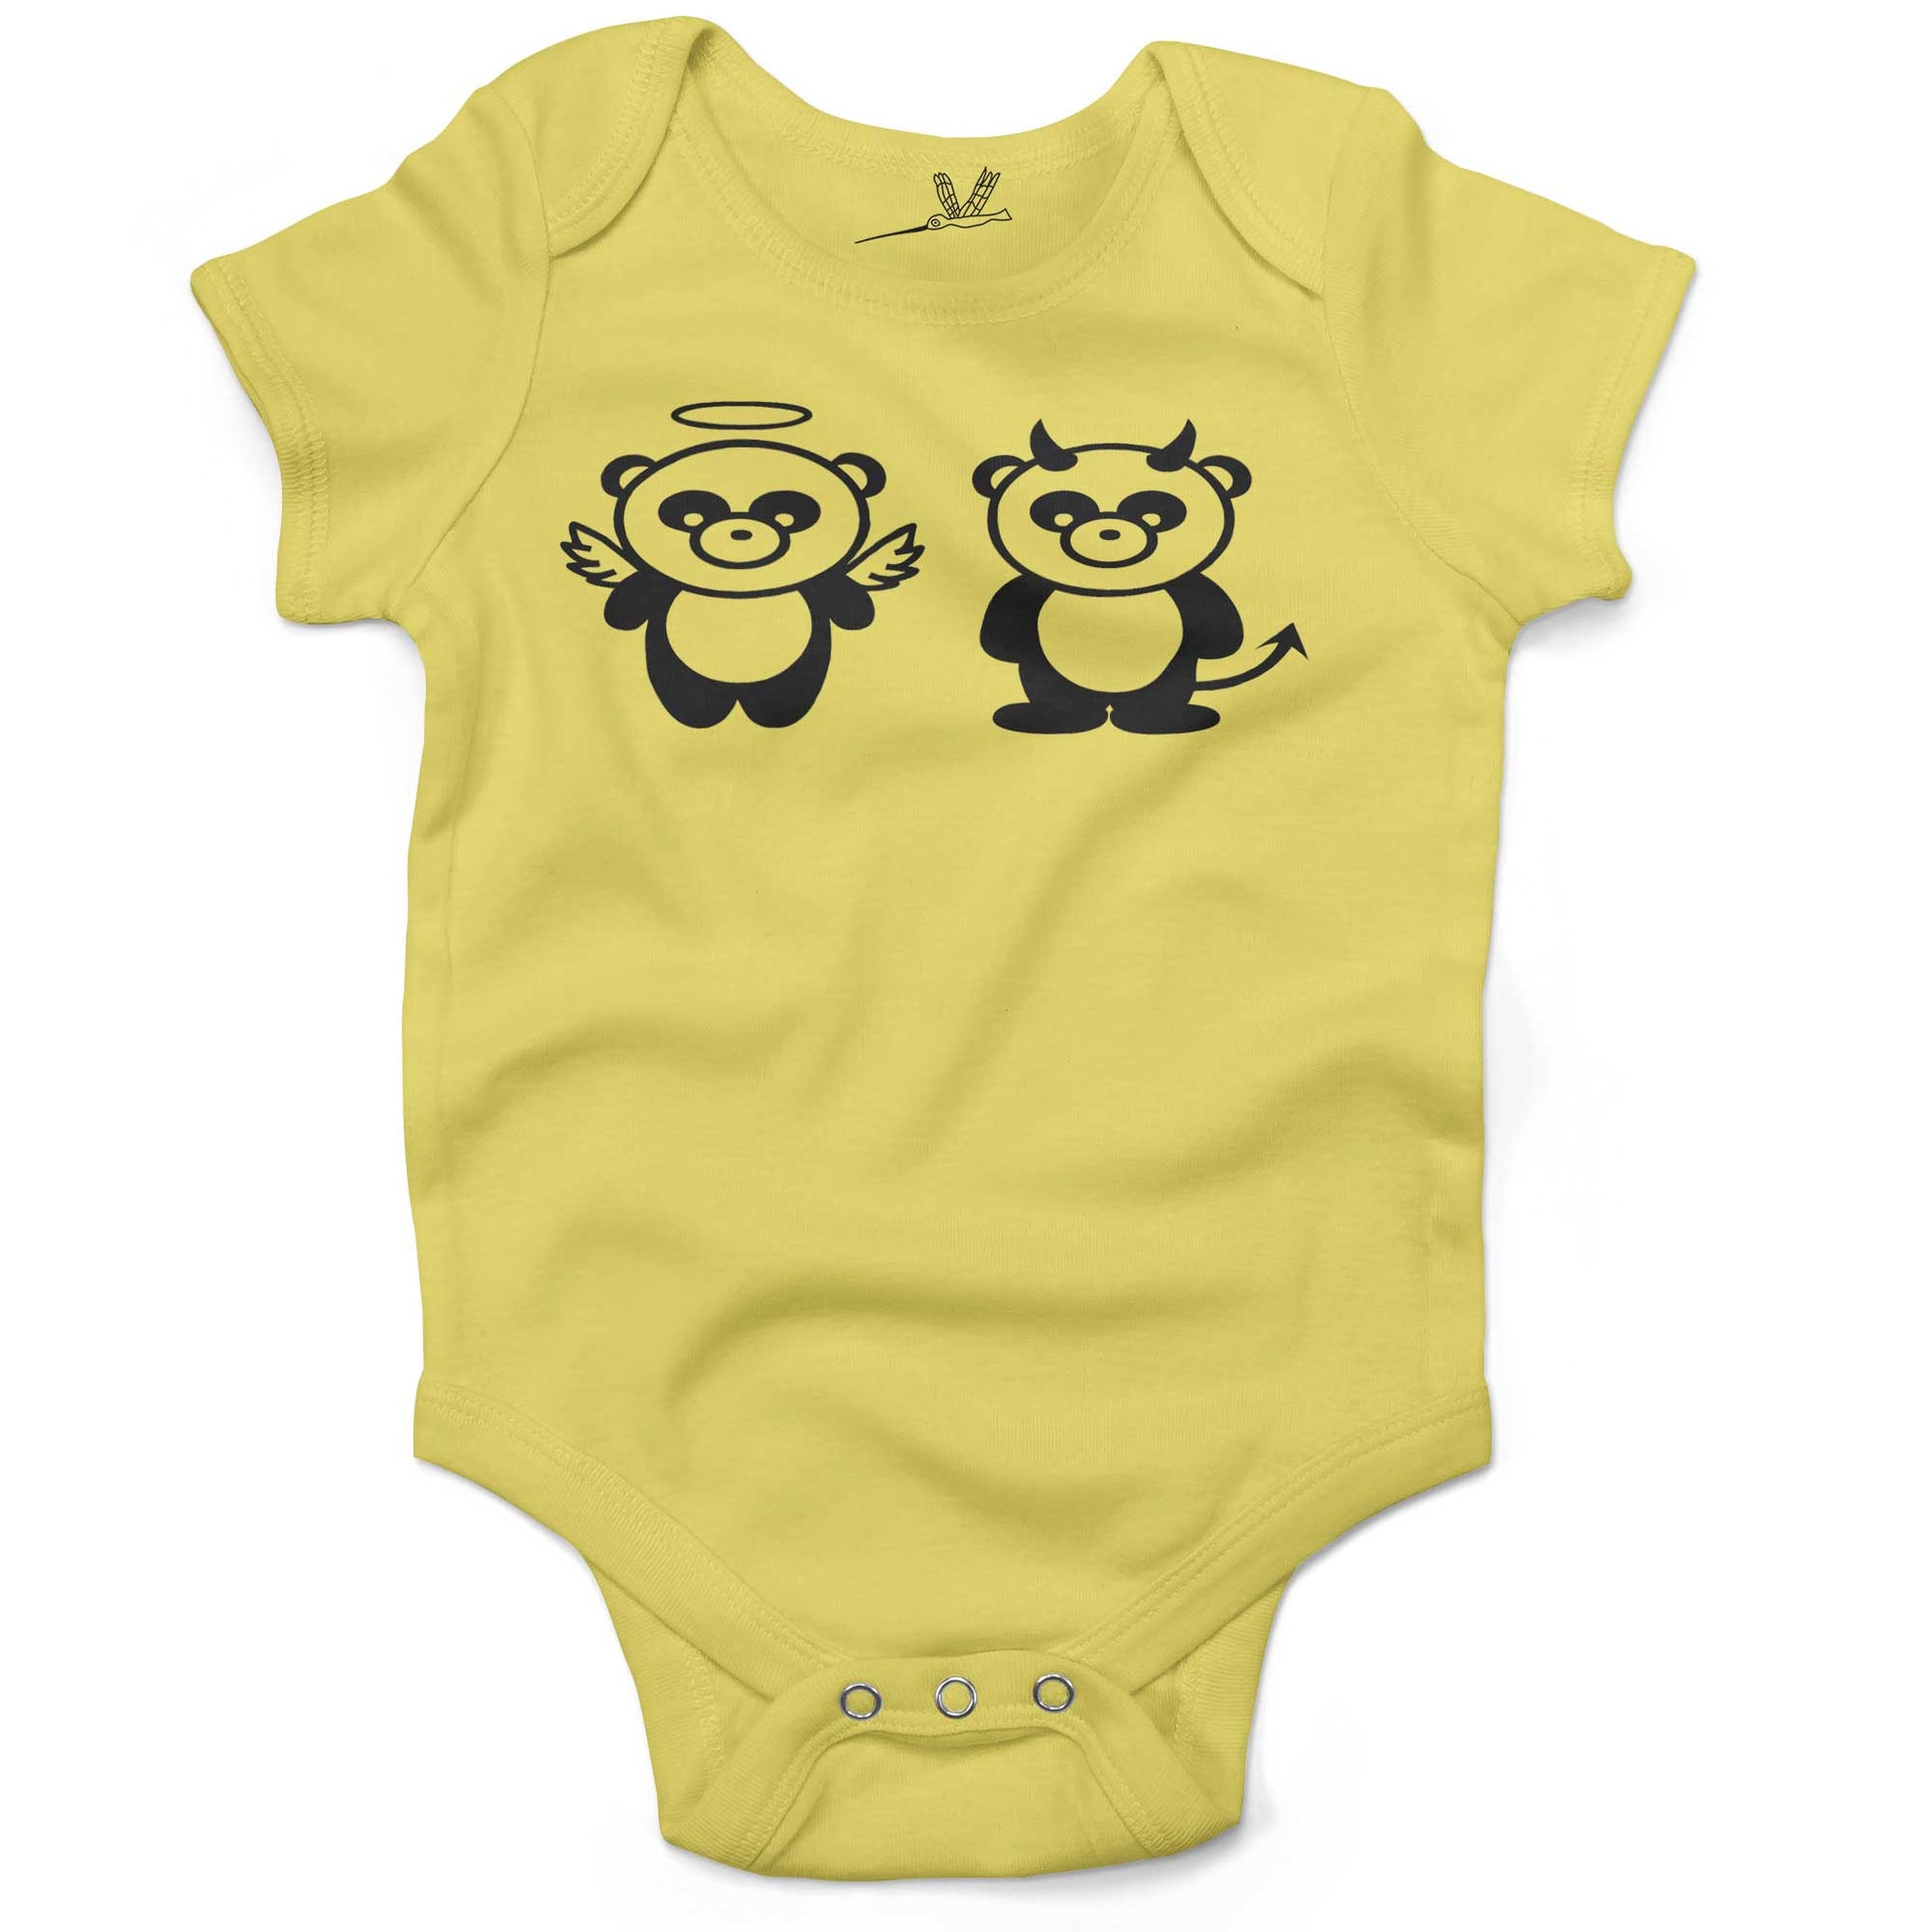 Good Panda, Bad Panda Infant Bodysuit or Raglan Tee-Yellow-3-6 months